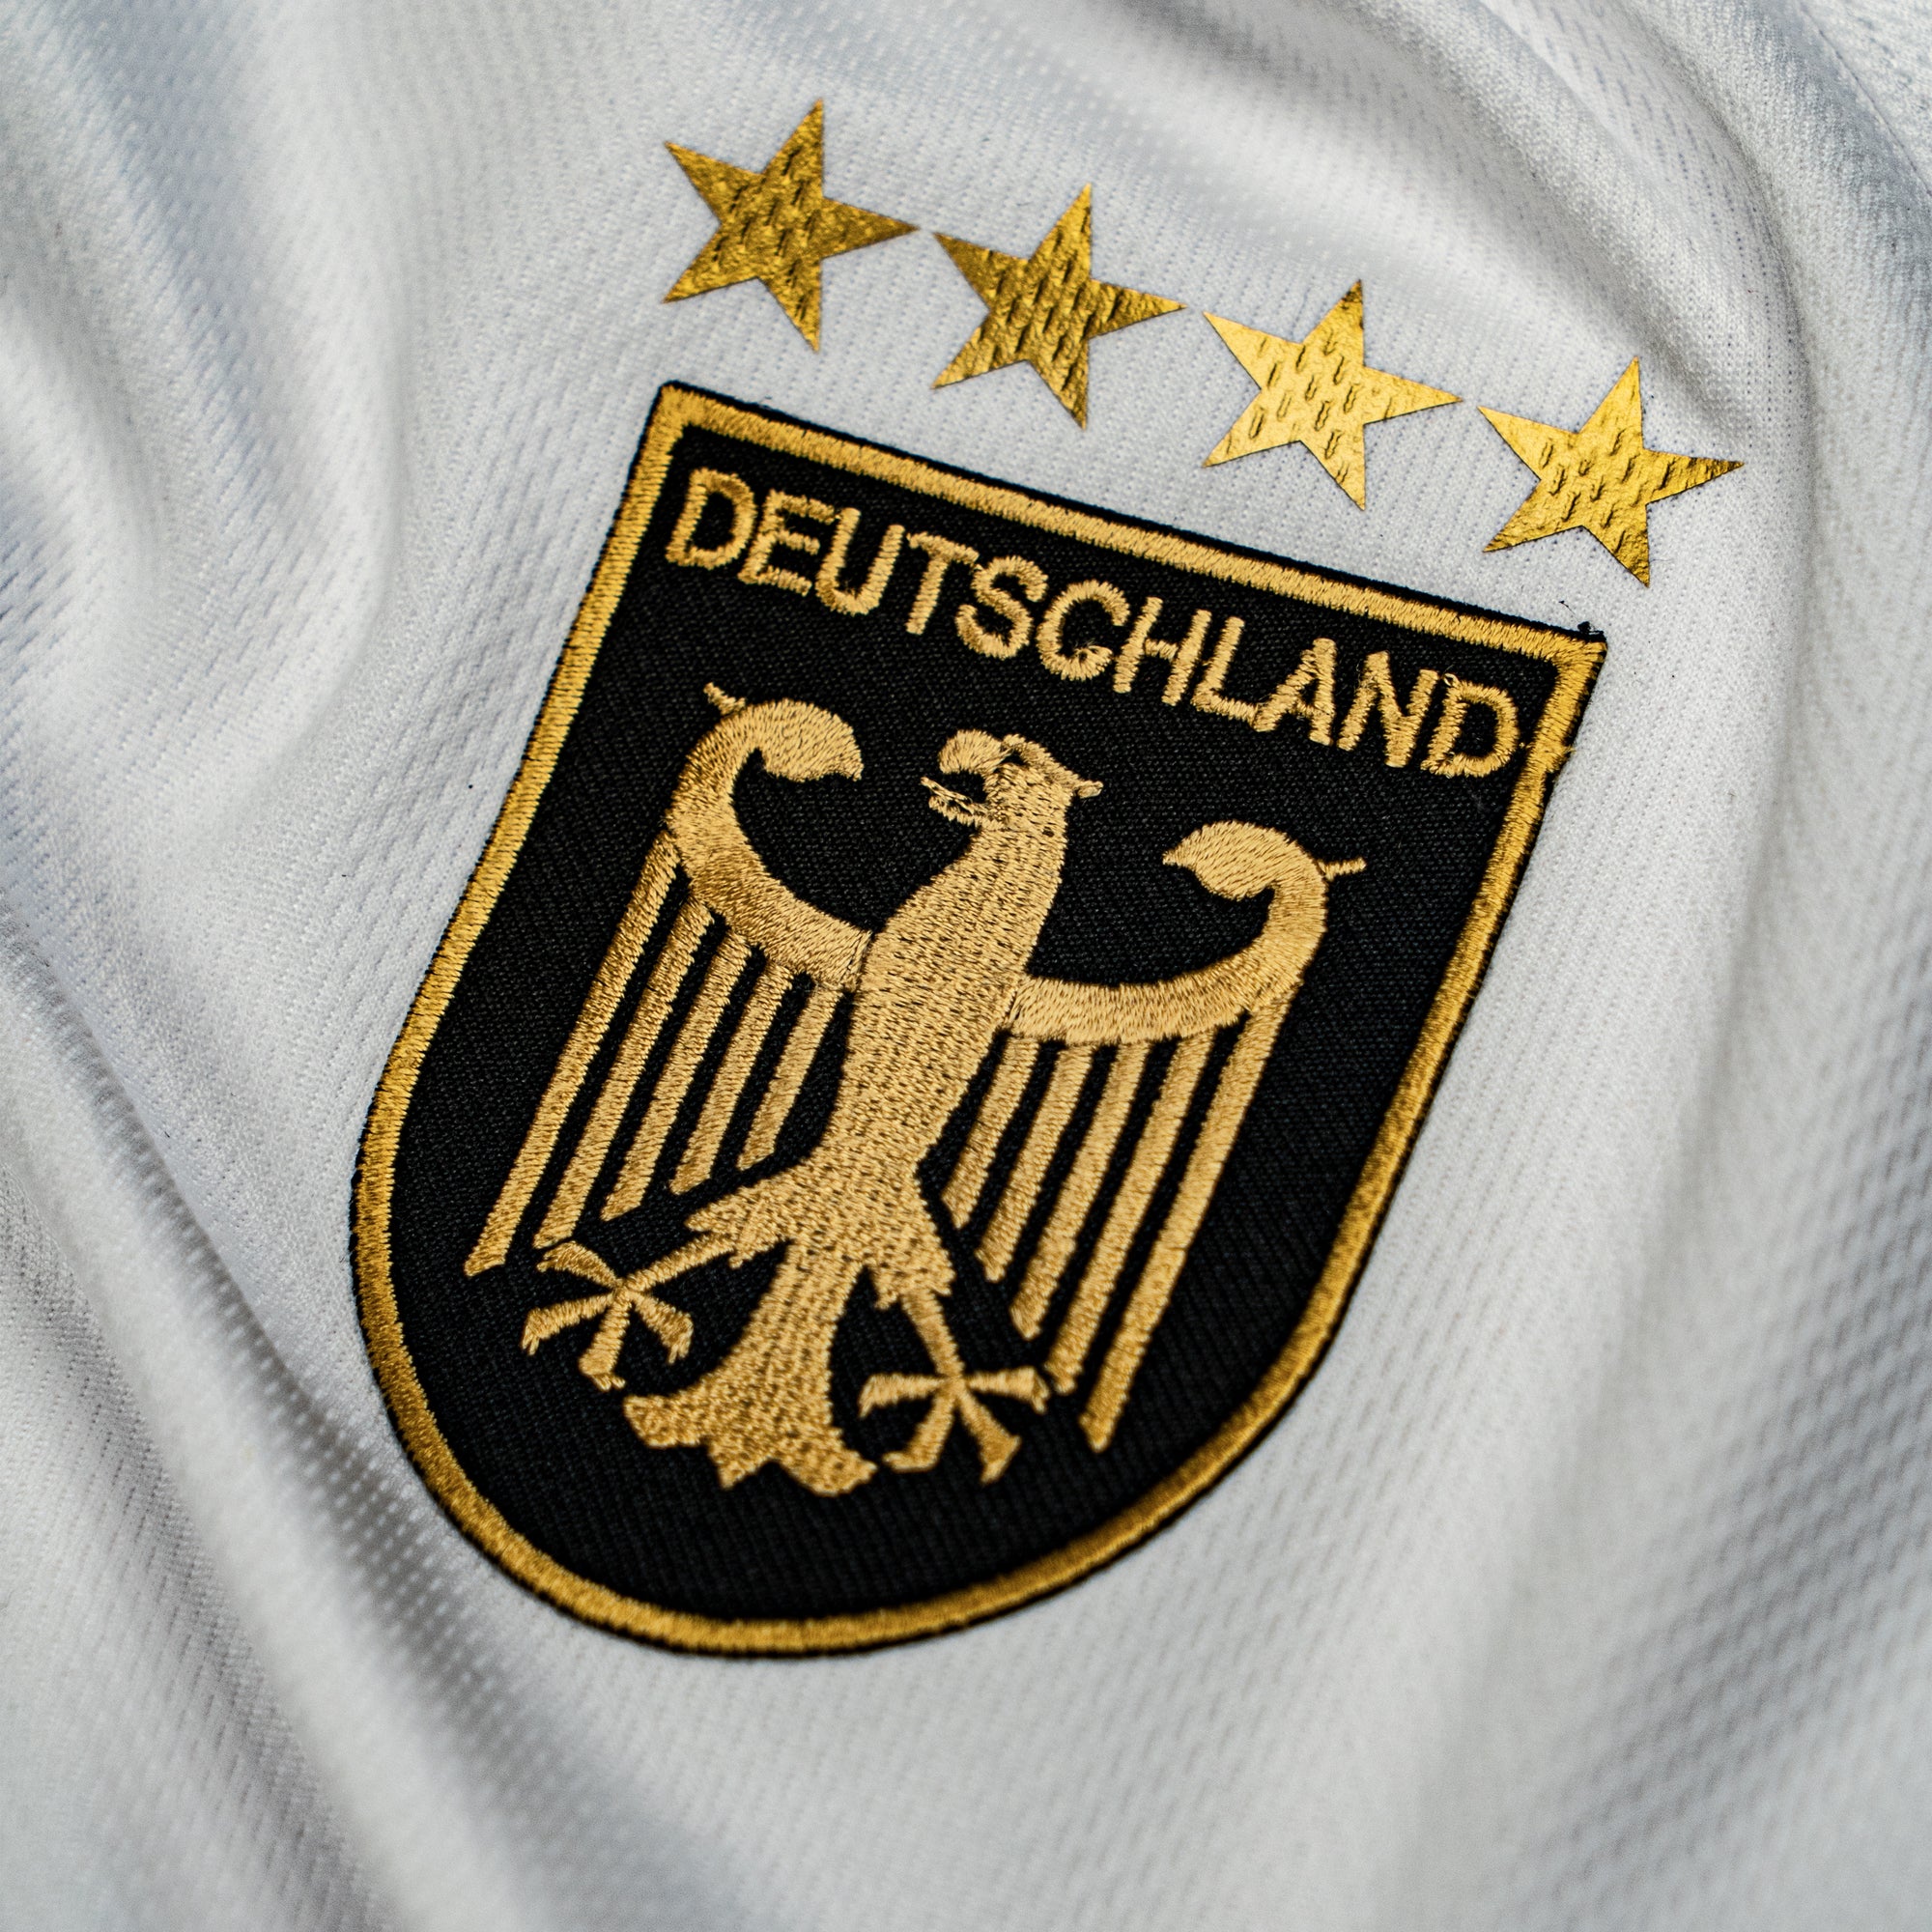 Personalisiertes Deutschland Fußball Set für Herren & Damen